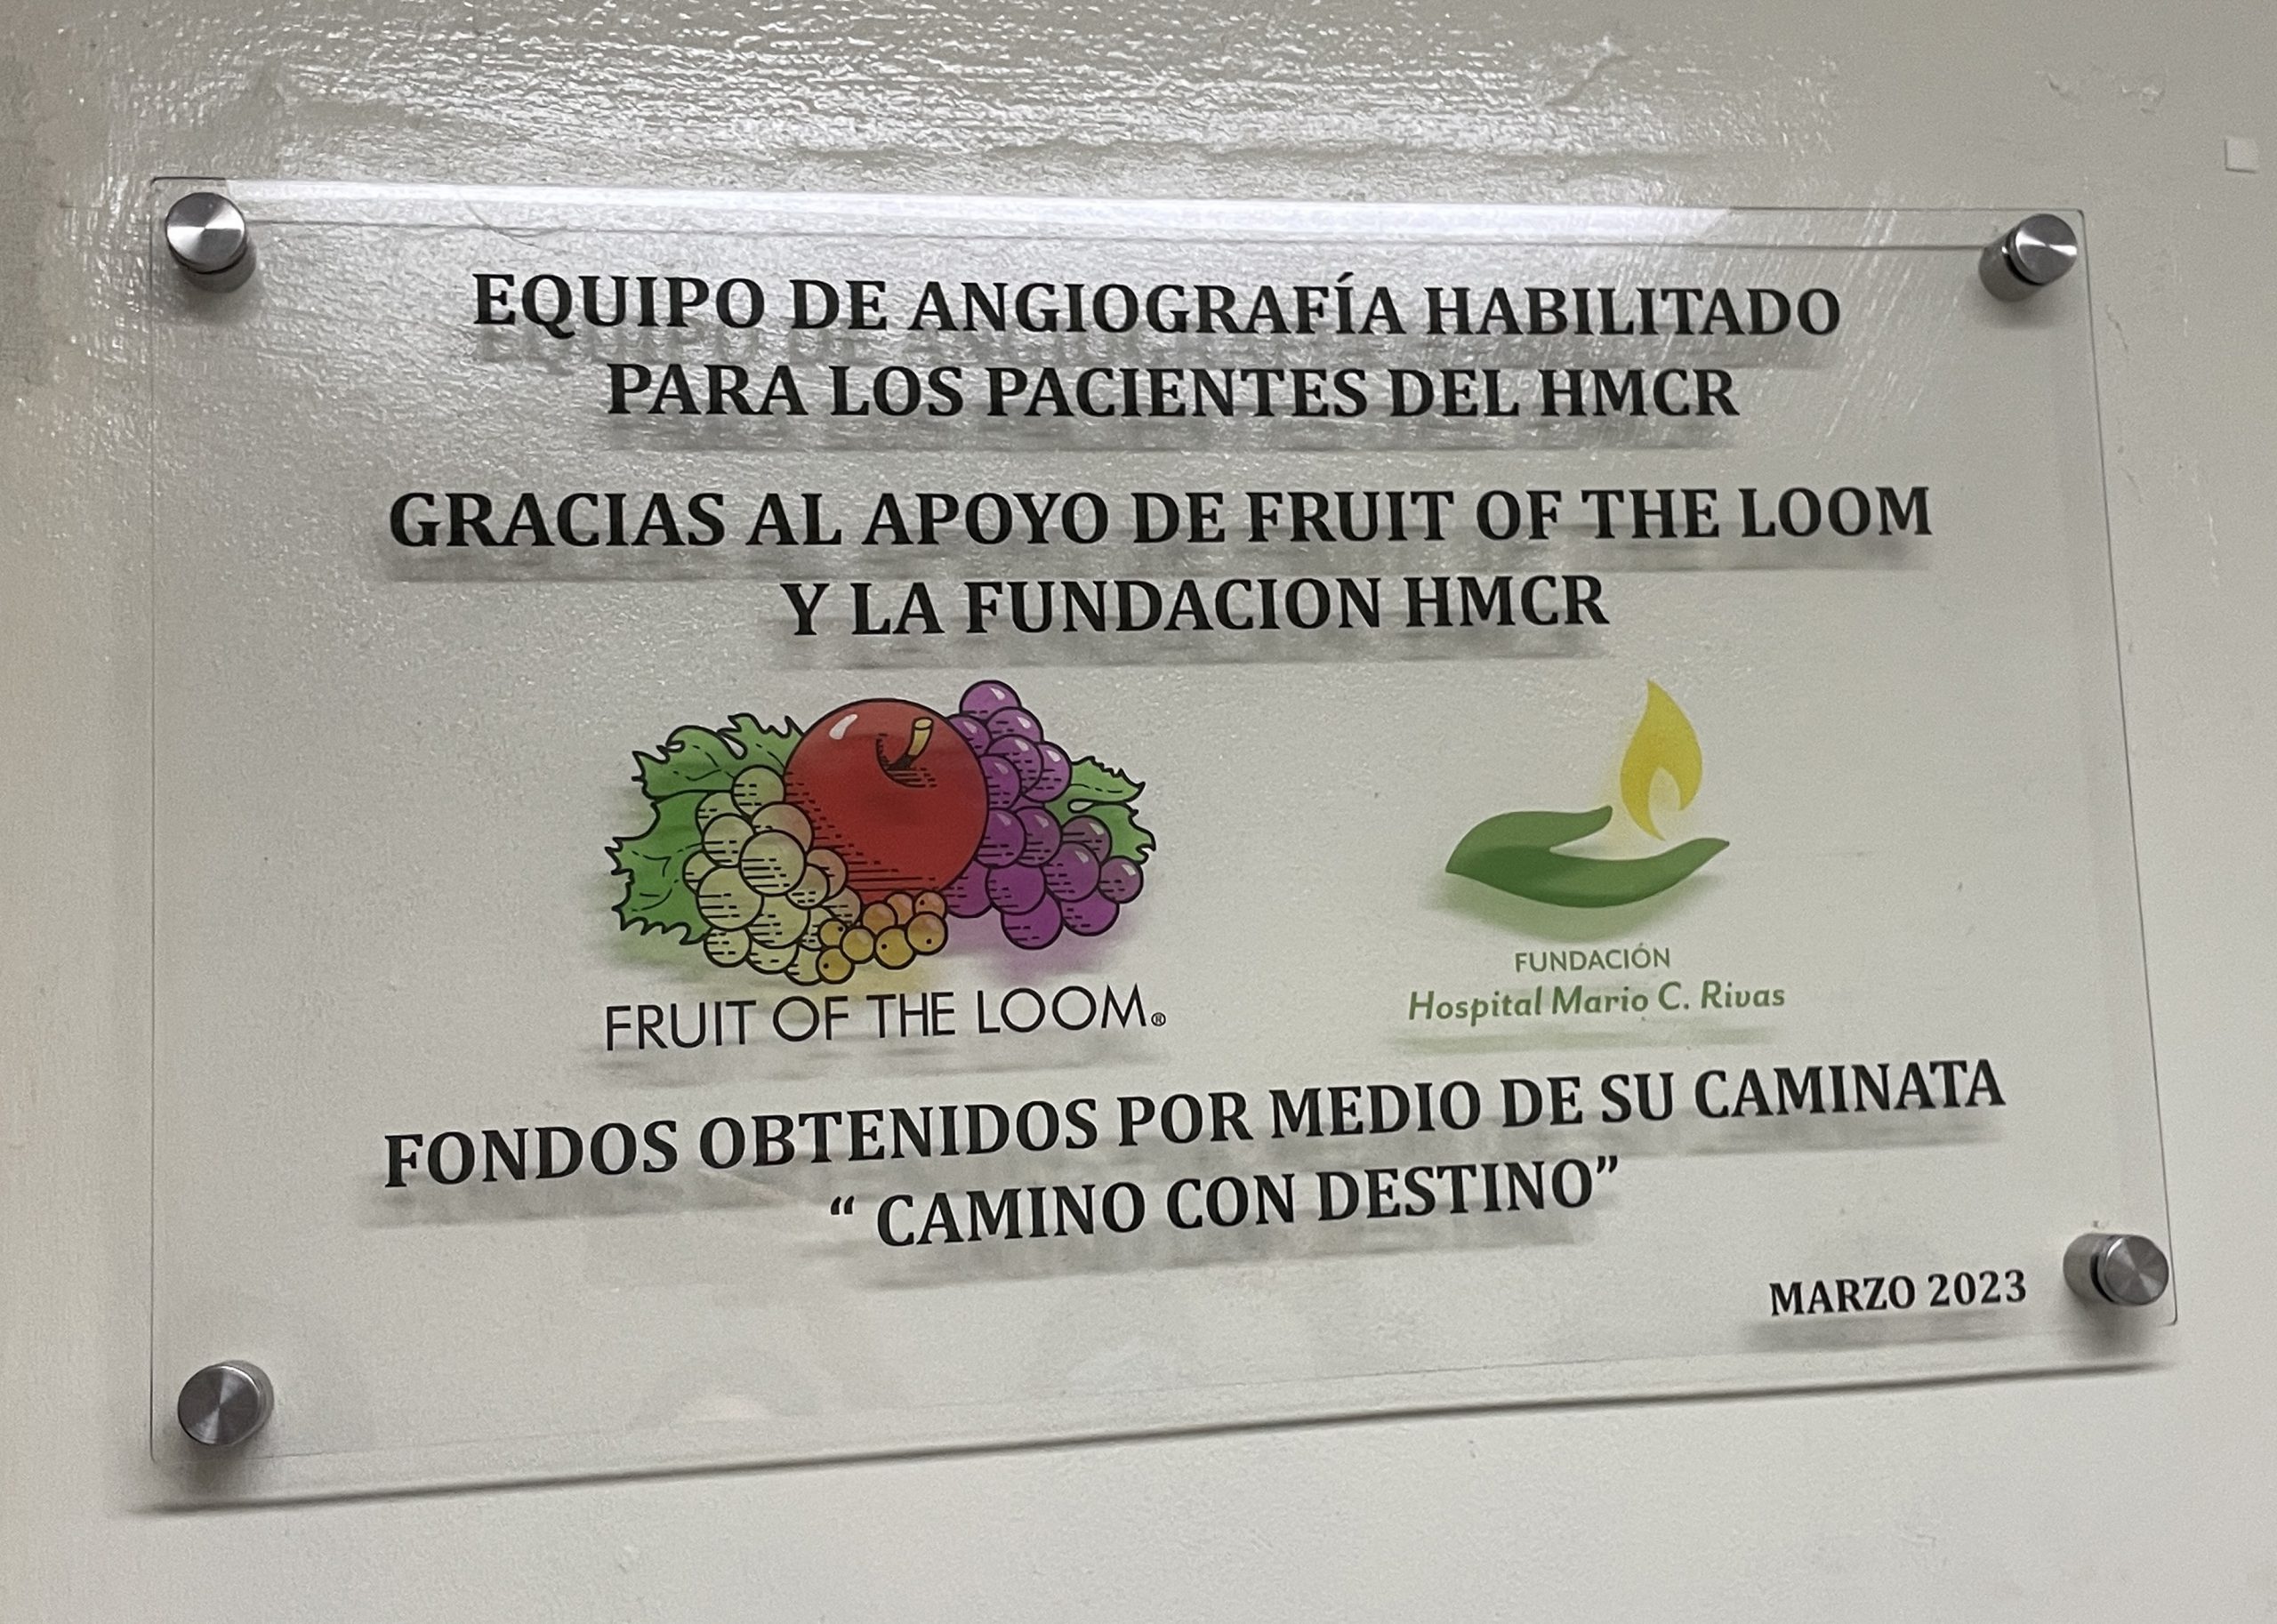 FRUIT OF THE LOOM REPARA EQUIPO DE ANGIOGRAFÍA EN HOSPITAL «MARIO C. RIVAS»